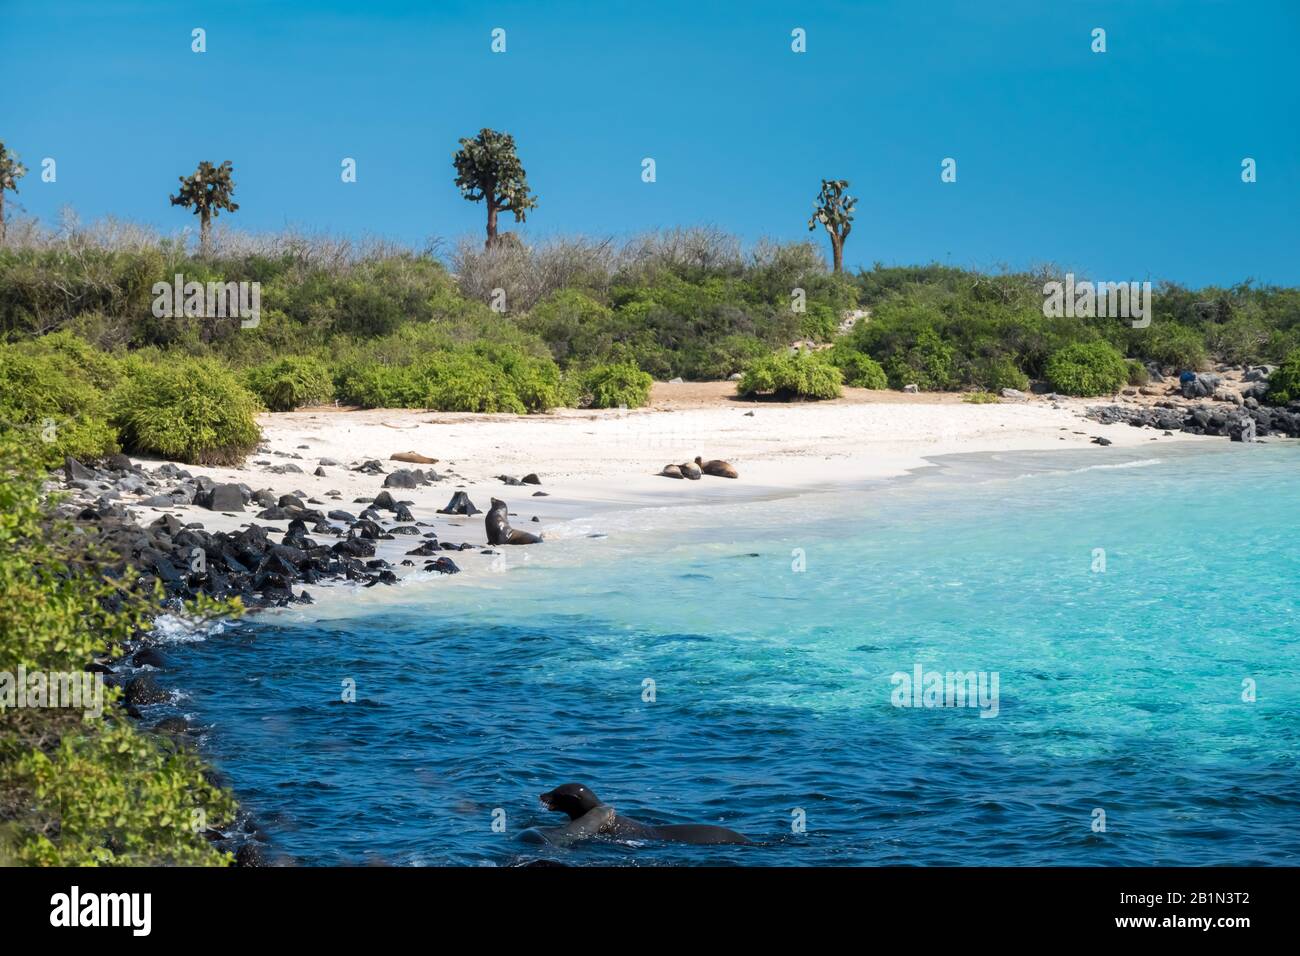 Paysages côtiers primitifs sur l'île de Santa Fe, avec des otaries, des iguanes et des groupes d'alcool marins, des îles Galapagos, Équateur Banque D'Images